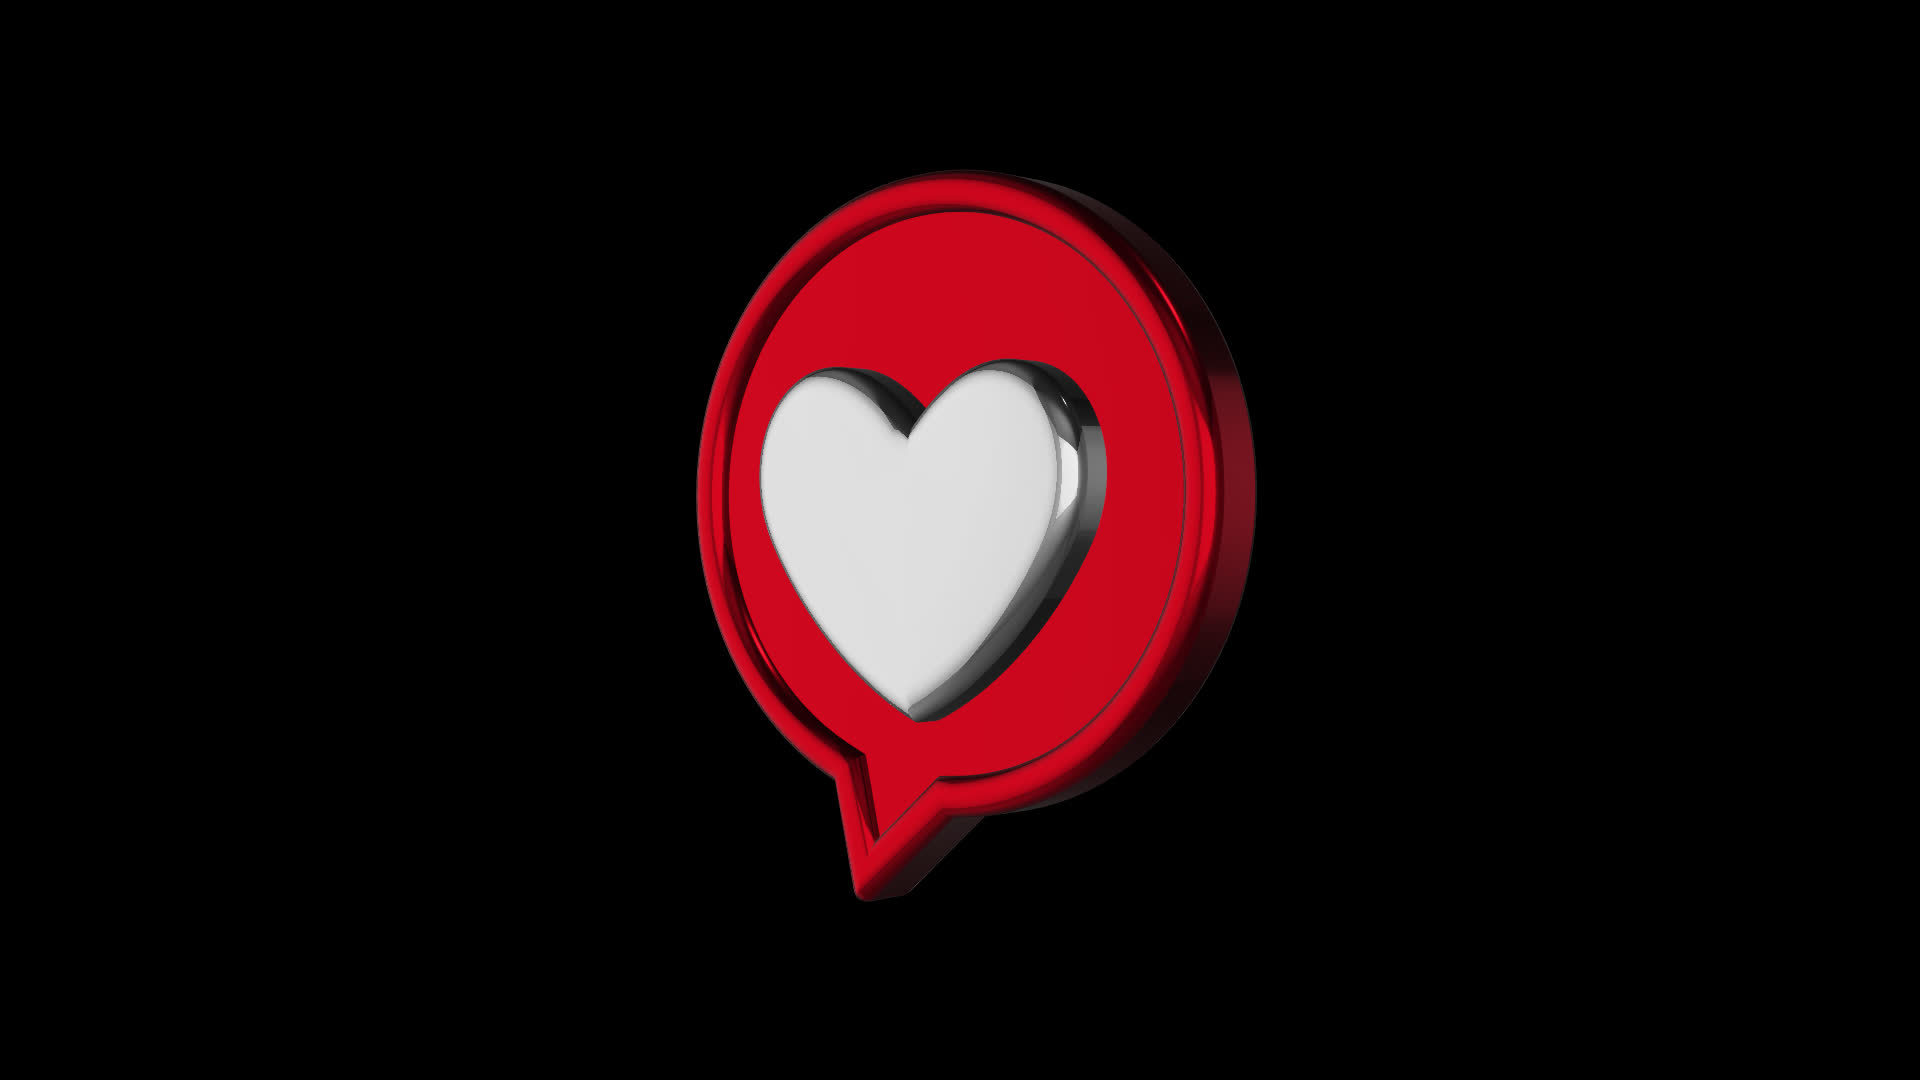 Nút thoại hình trái tim đỏ 3D sẽ khiến cuộc gọi của bạn trở nên thú vị hơn bao giờ hết. Được thiết kế với hình dáng của trái tim, nút thoại này sẽ mang đến cho bạn một trải nghiệm cực kỳ thú vị. Hãy xem hình ảnh liên quan để trang trí cho điện thoại của bạn một cách độc đáo.